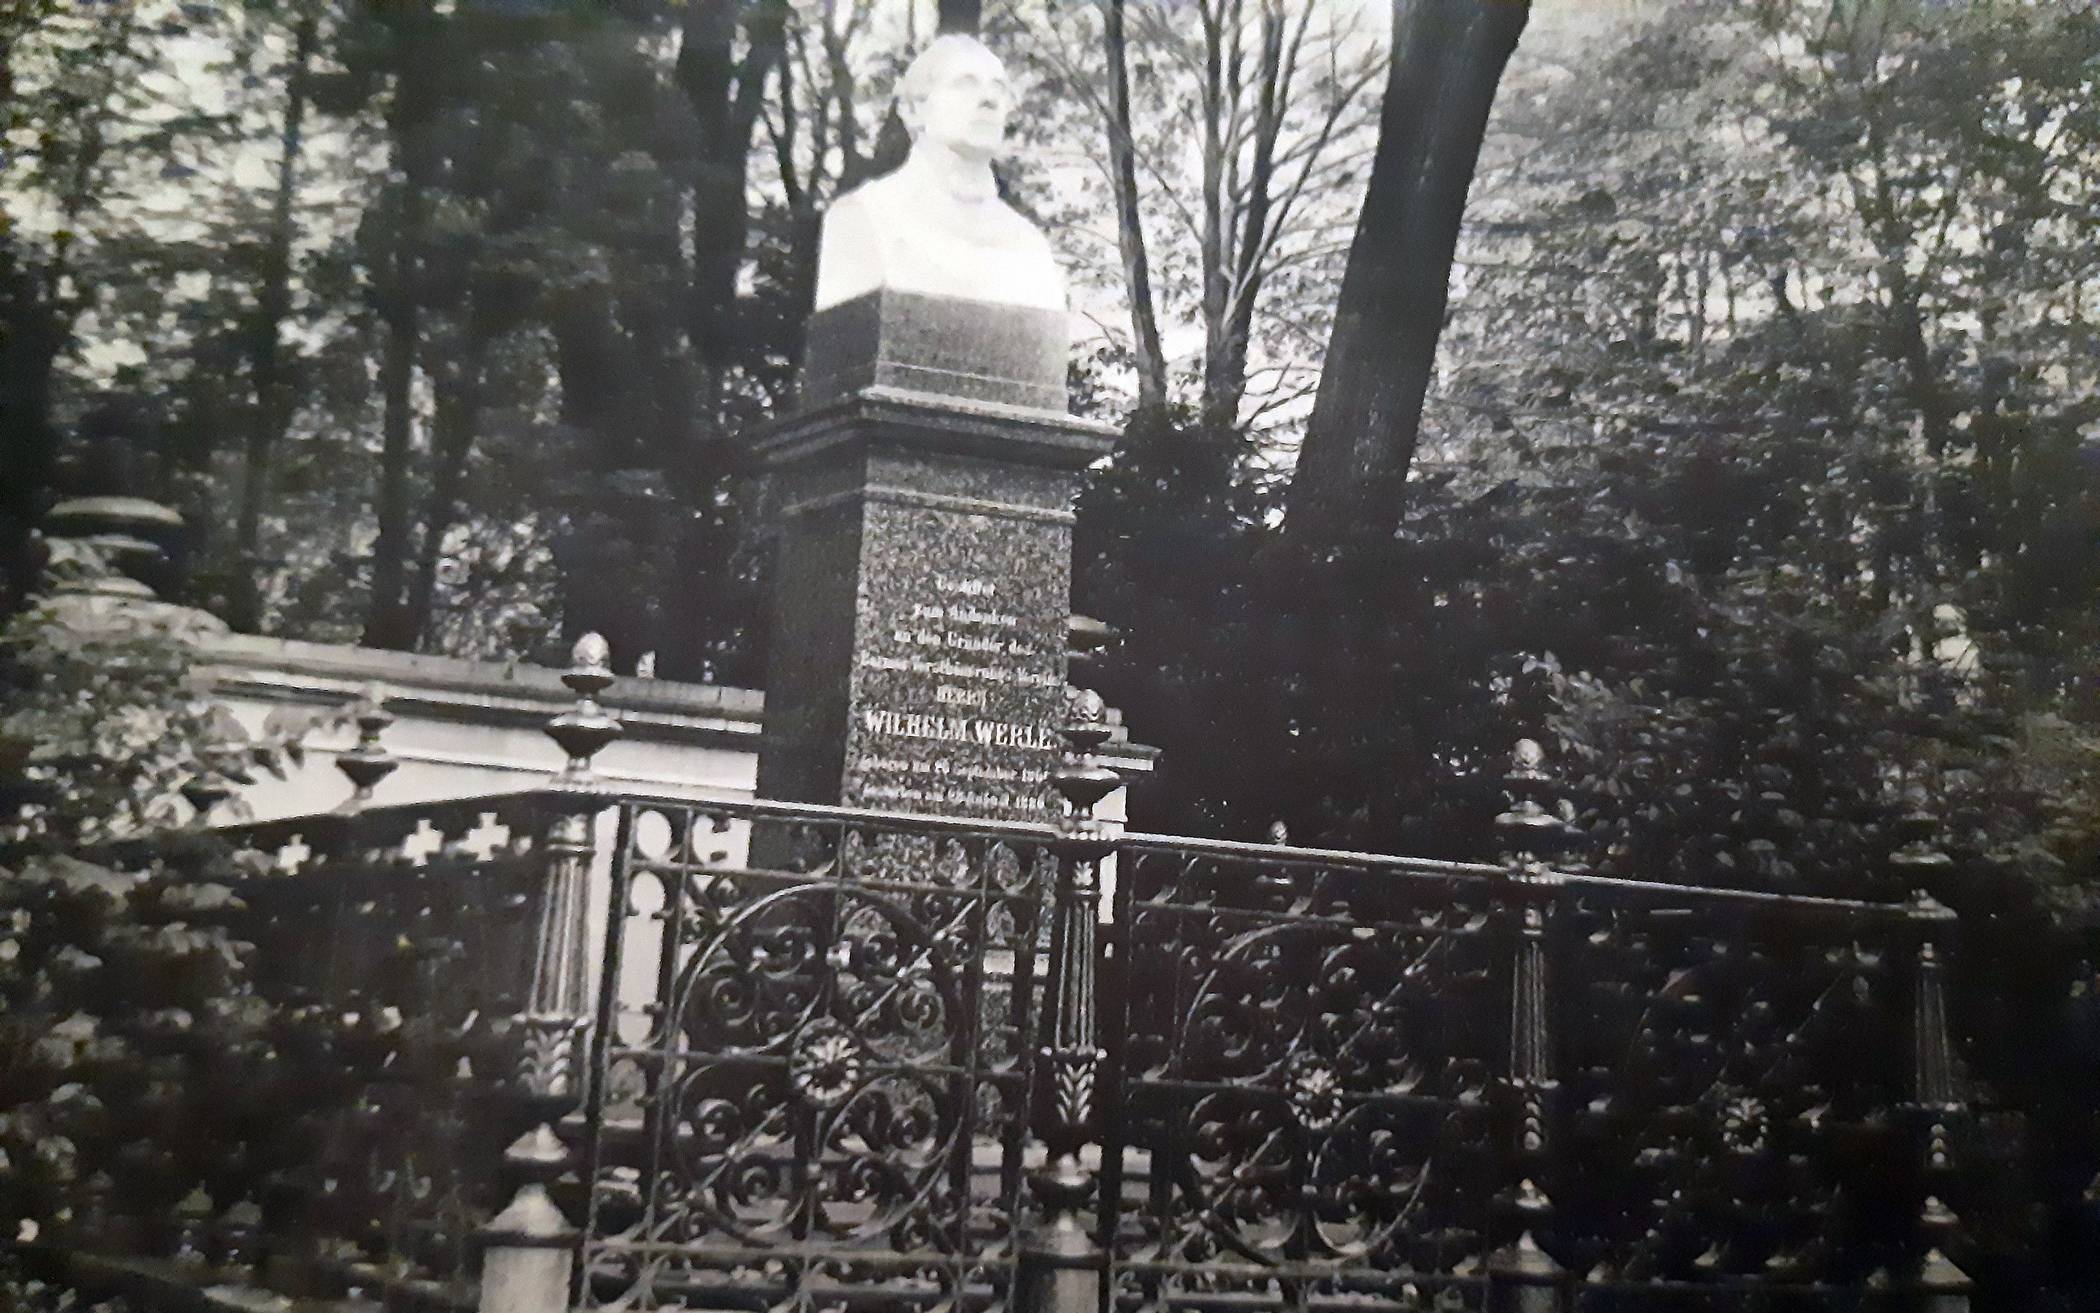  Dieses Denkmal stellte der Barmer Verschönerungsverein zur Erinnerung an seinen Gründungsvorsitzenden Wilhelm Werlé in den unteren Anlagen auf. Der Zaun ging im Zweiten Weltkrieg verloren, Werlés Nase wurde zum wiederholten Male abgeschlagen. 